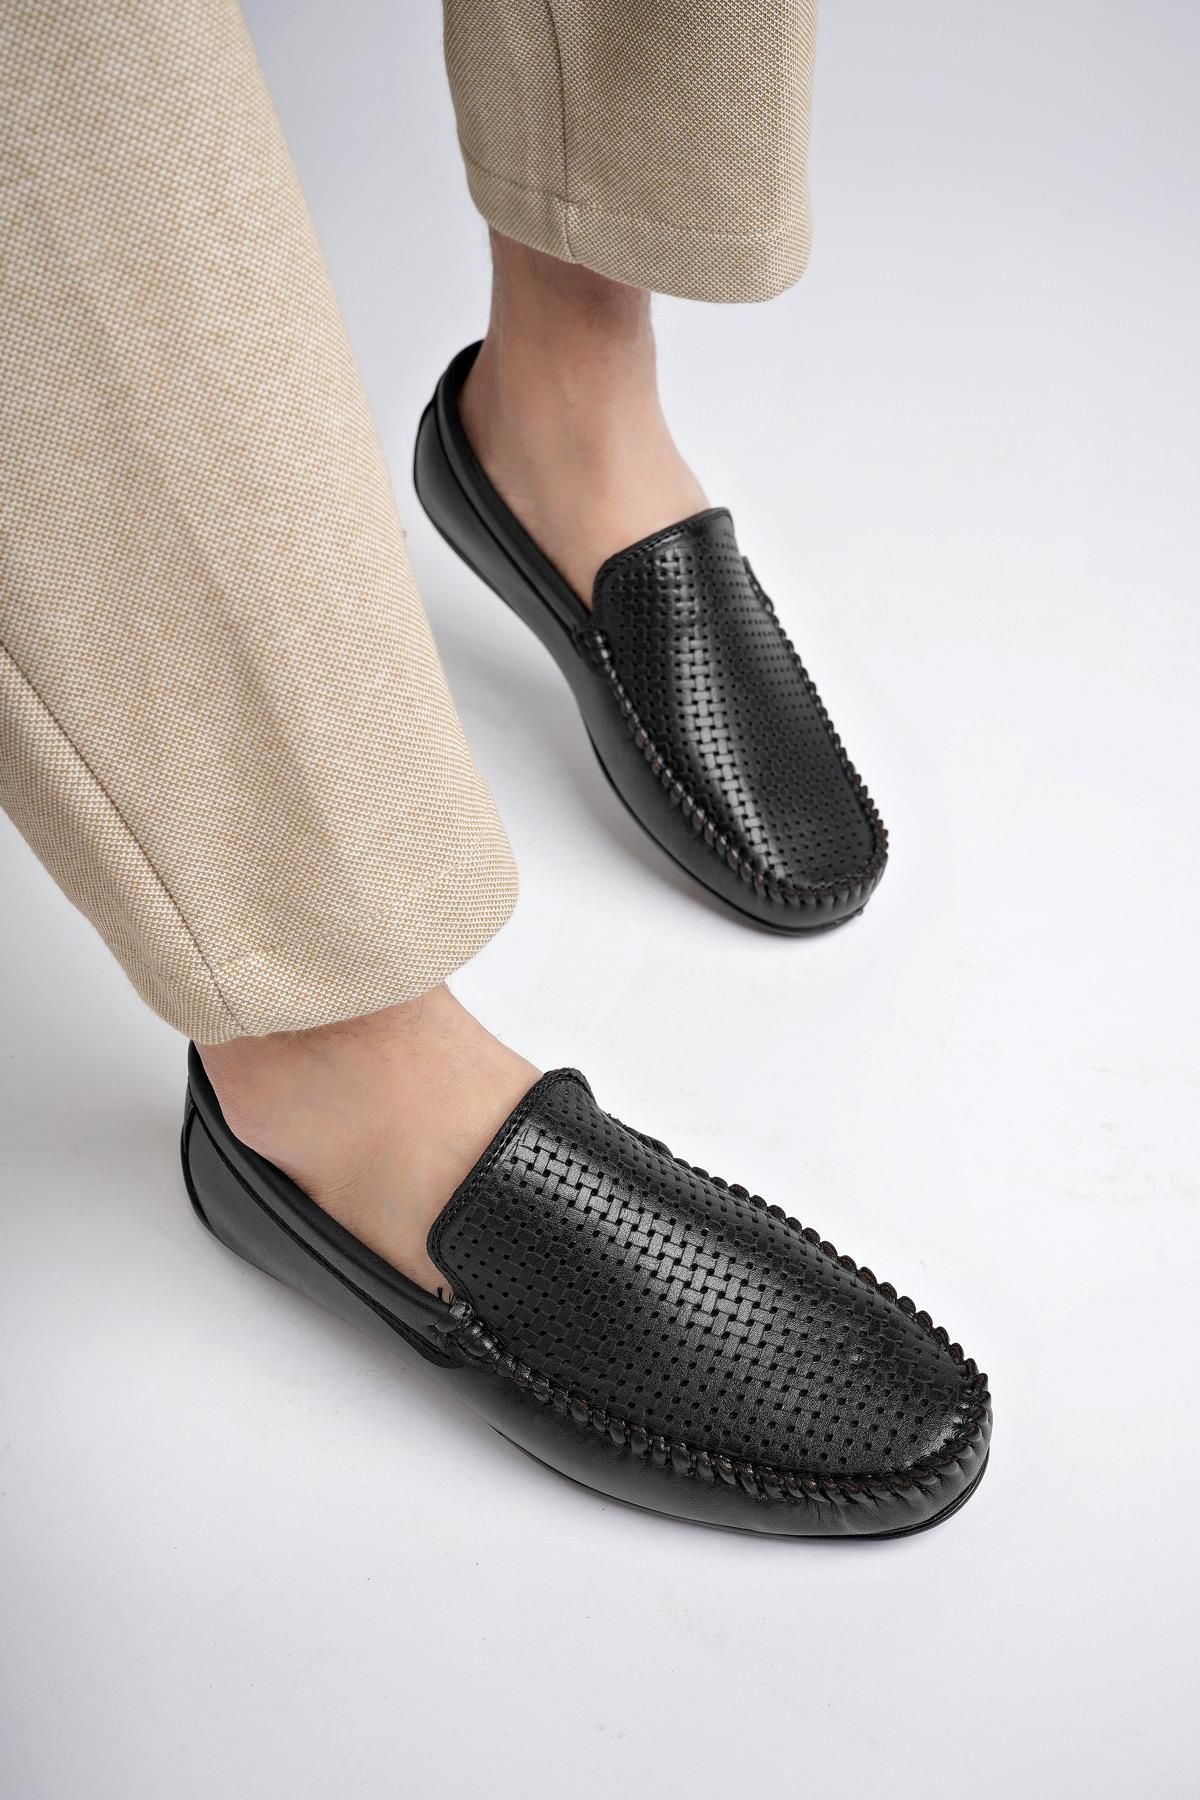 Muggo Mb1113 Garantili Erkek Günlük Klasik Casual Rahat Ortopedik Esnek Yazlık Ayakkabı